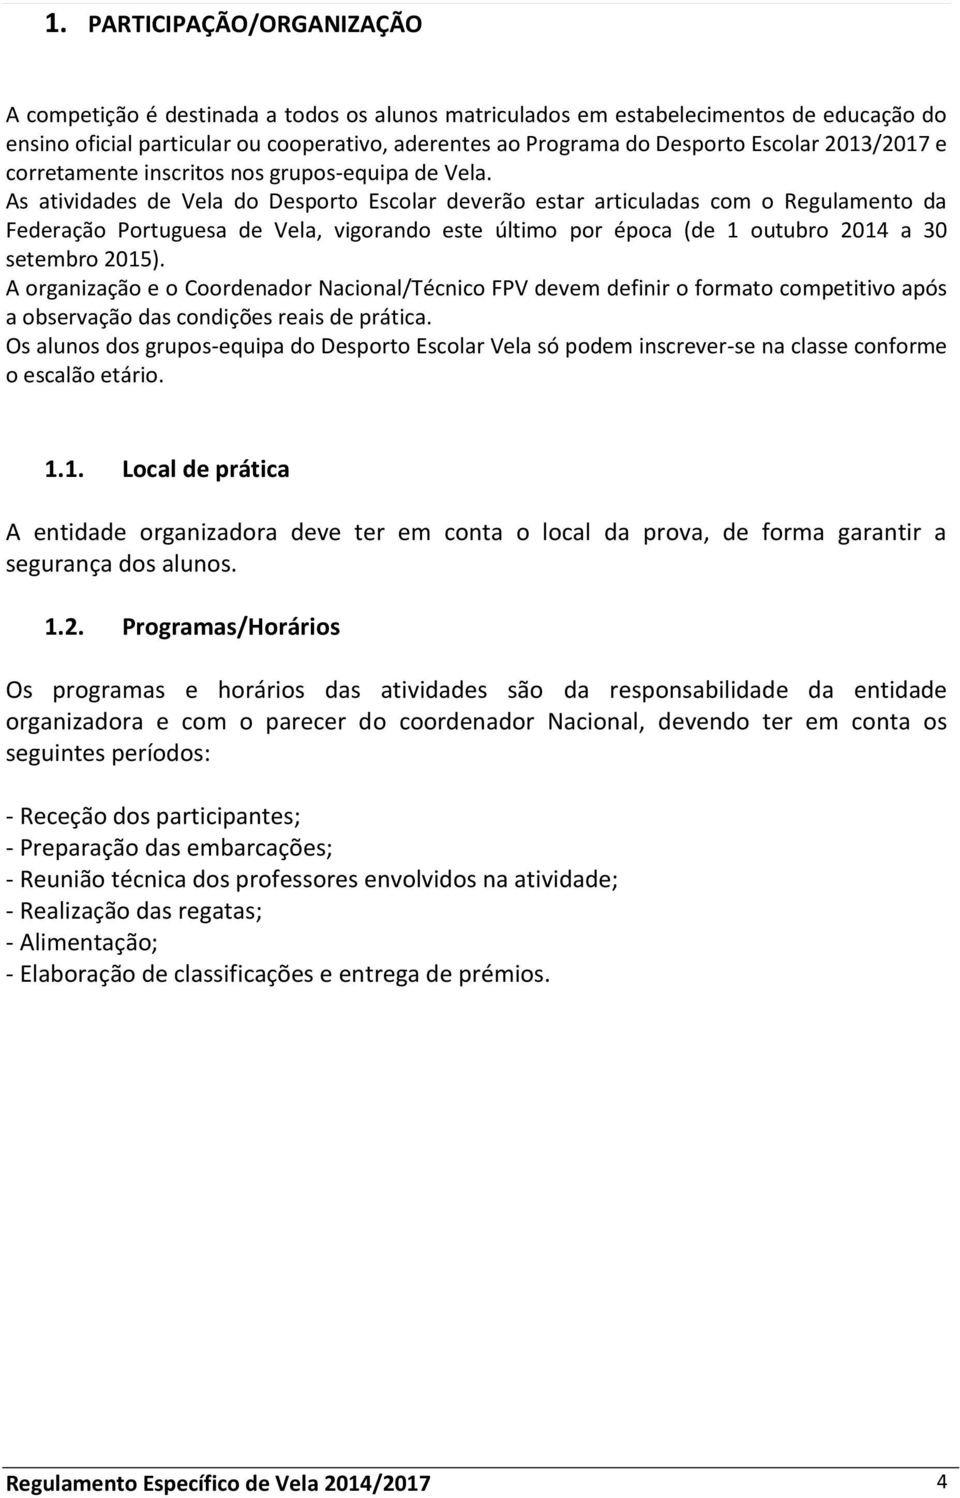 As atividades de Vela do Desporto Escolar deverão estar articuladas com o Regulamento da Federação Portuguesa de Vela, vigorando este último por época (de 1 outubro 2014 a 30 setembro 2015).